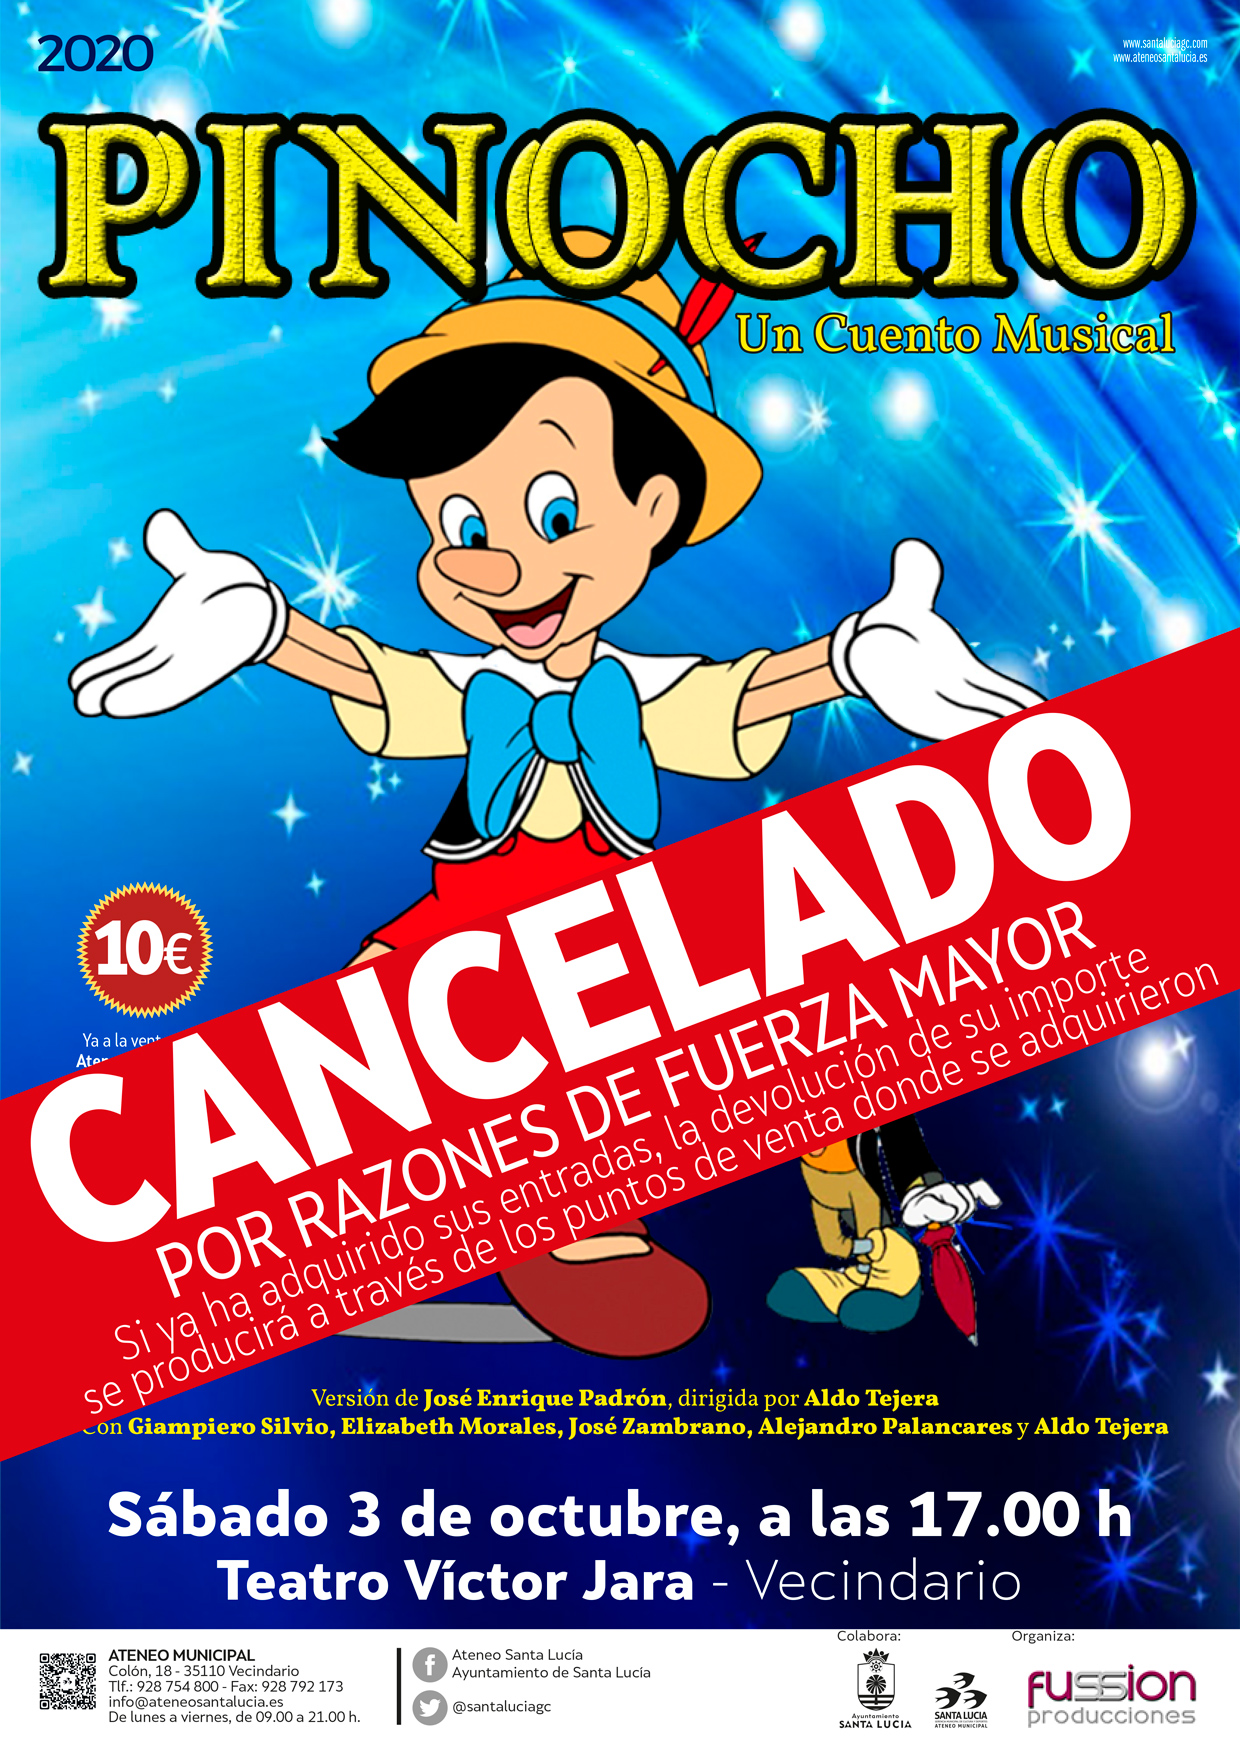 Cancelada  la representación de ‘Pinocho, un cuento musical’ que estaba programada el 3 de octubre en el teatro Víctor Jara